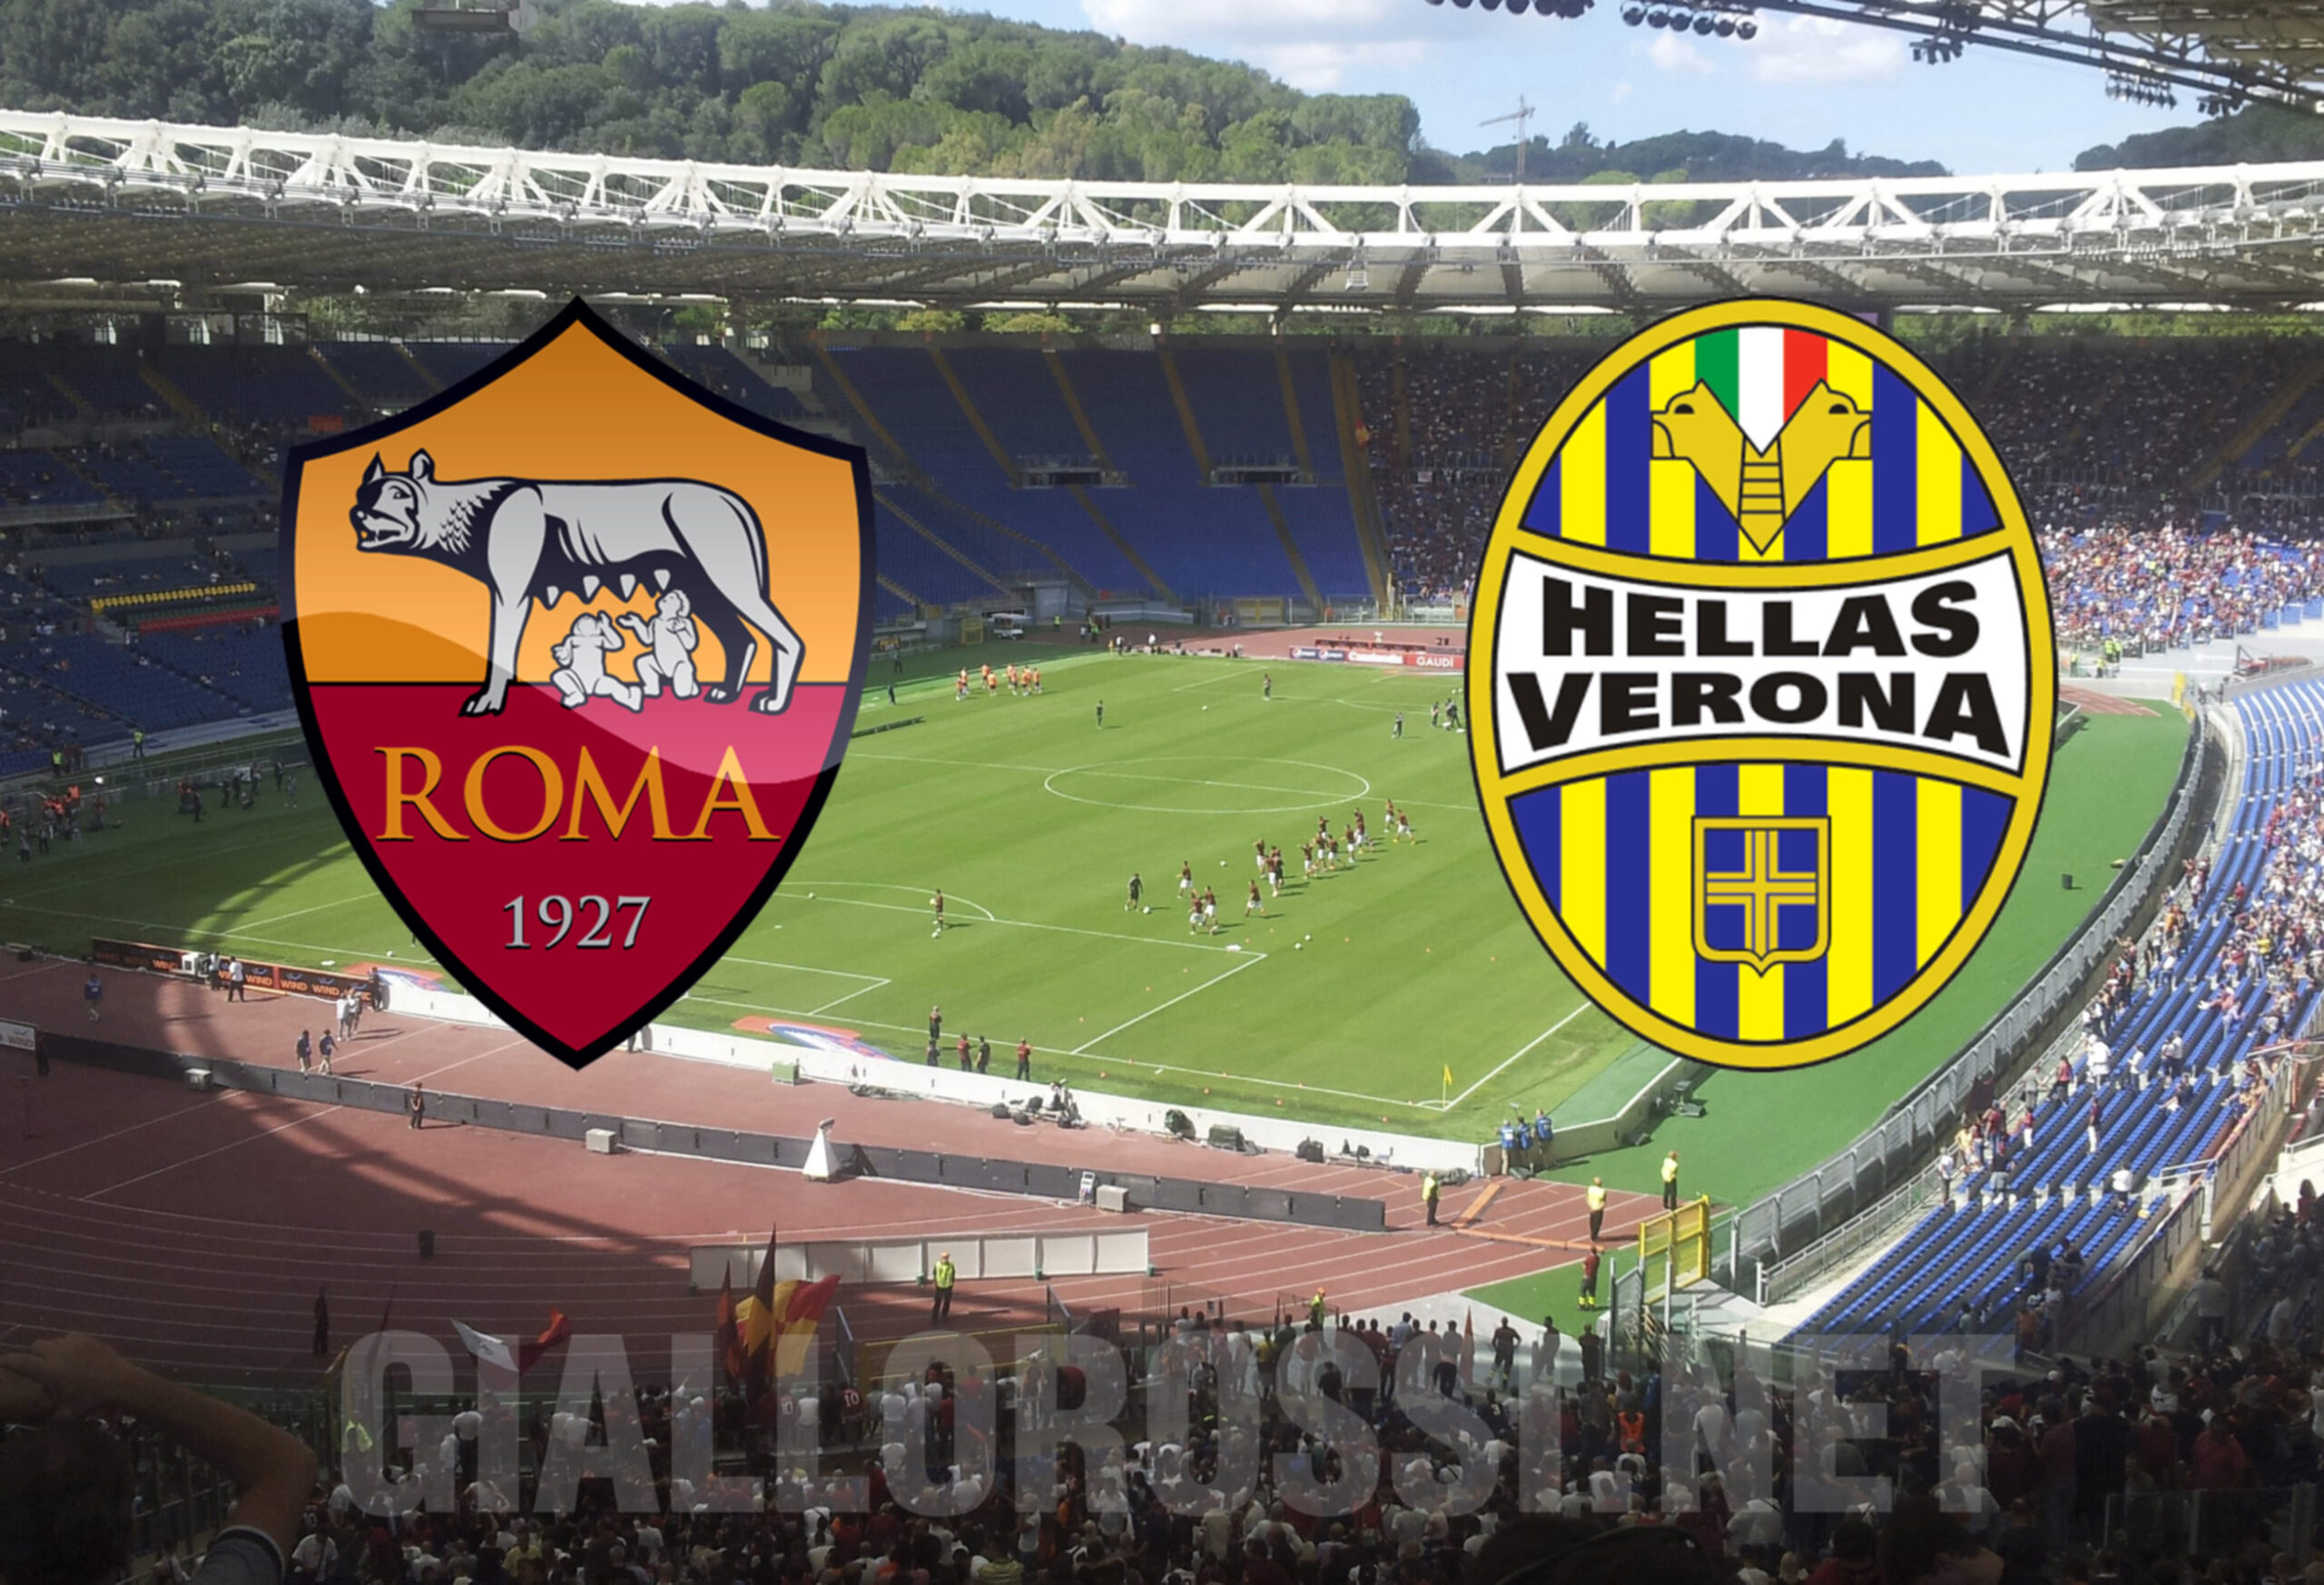 FINALE) Roma - Hellas Verona: 2-0 (75' Florenzi, 86' Destro). Due